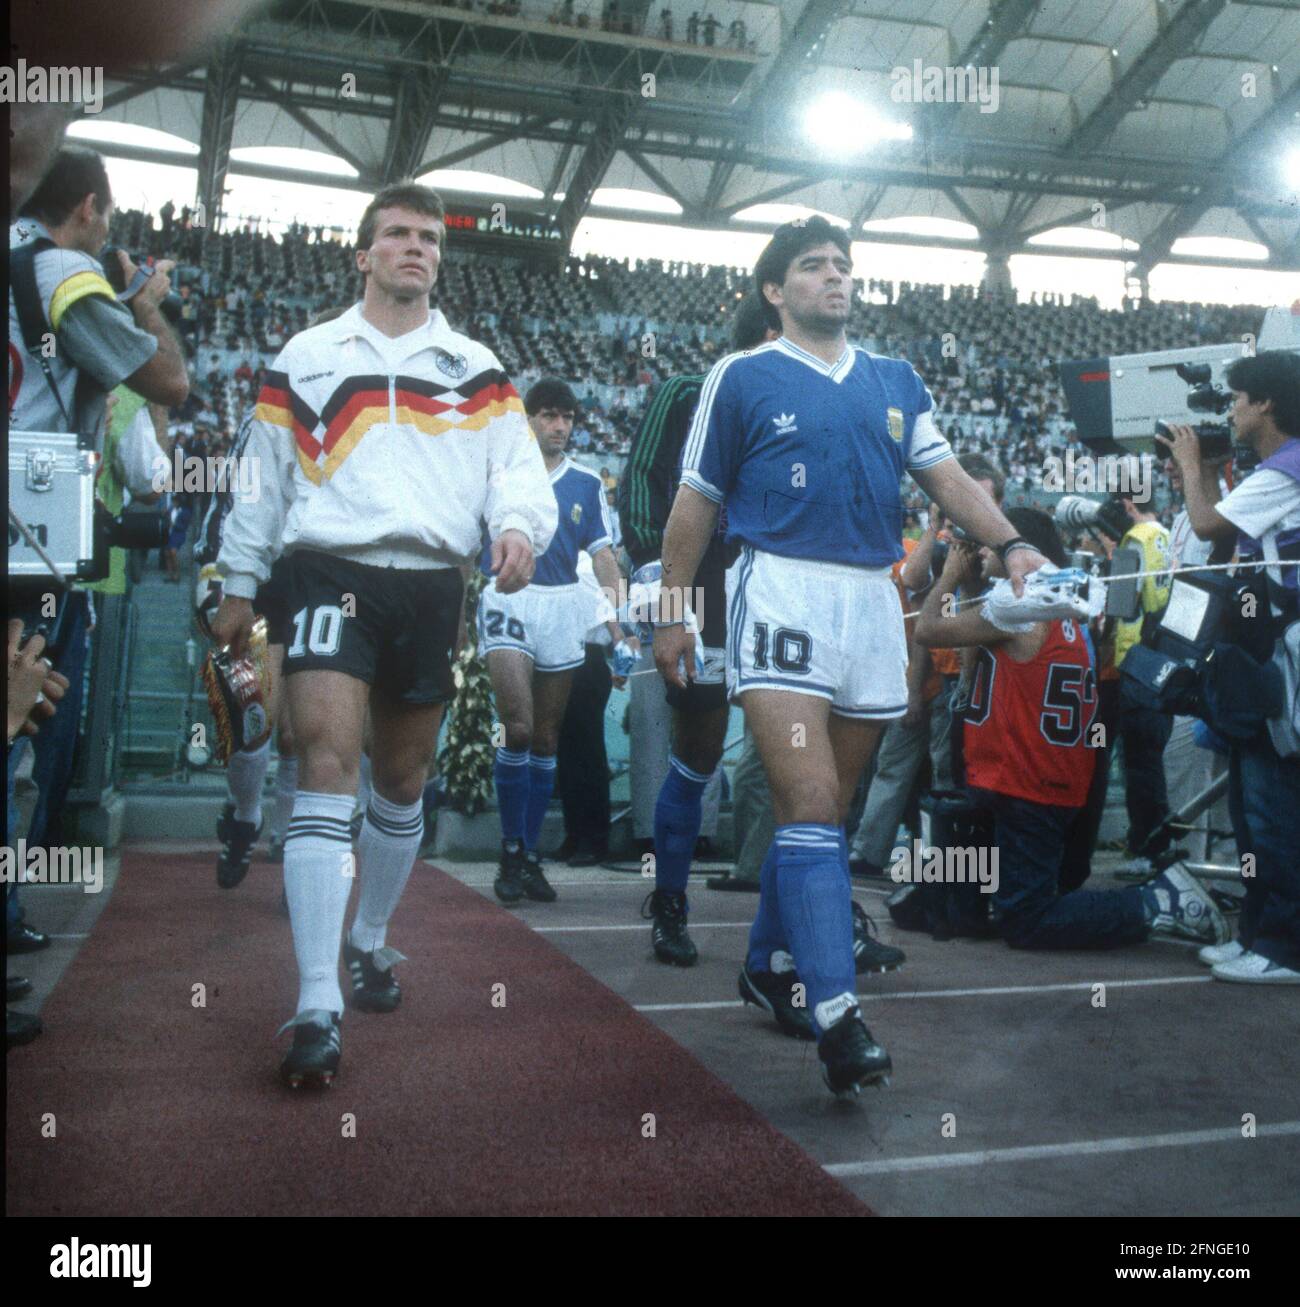 Wm-Finale 90 Deutschland - Argentinien 1:0/08.07.1990. Lothar Matthäus (l.)  und Diego Maradona kommen auf den Platz. [Automatisierte Übersetzung]  Stockfotografie - Alamy